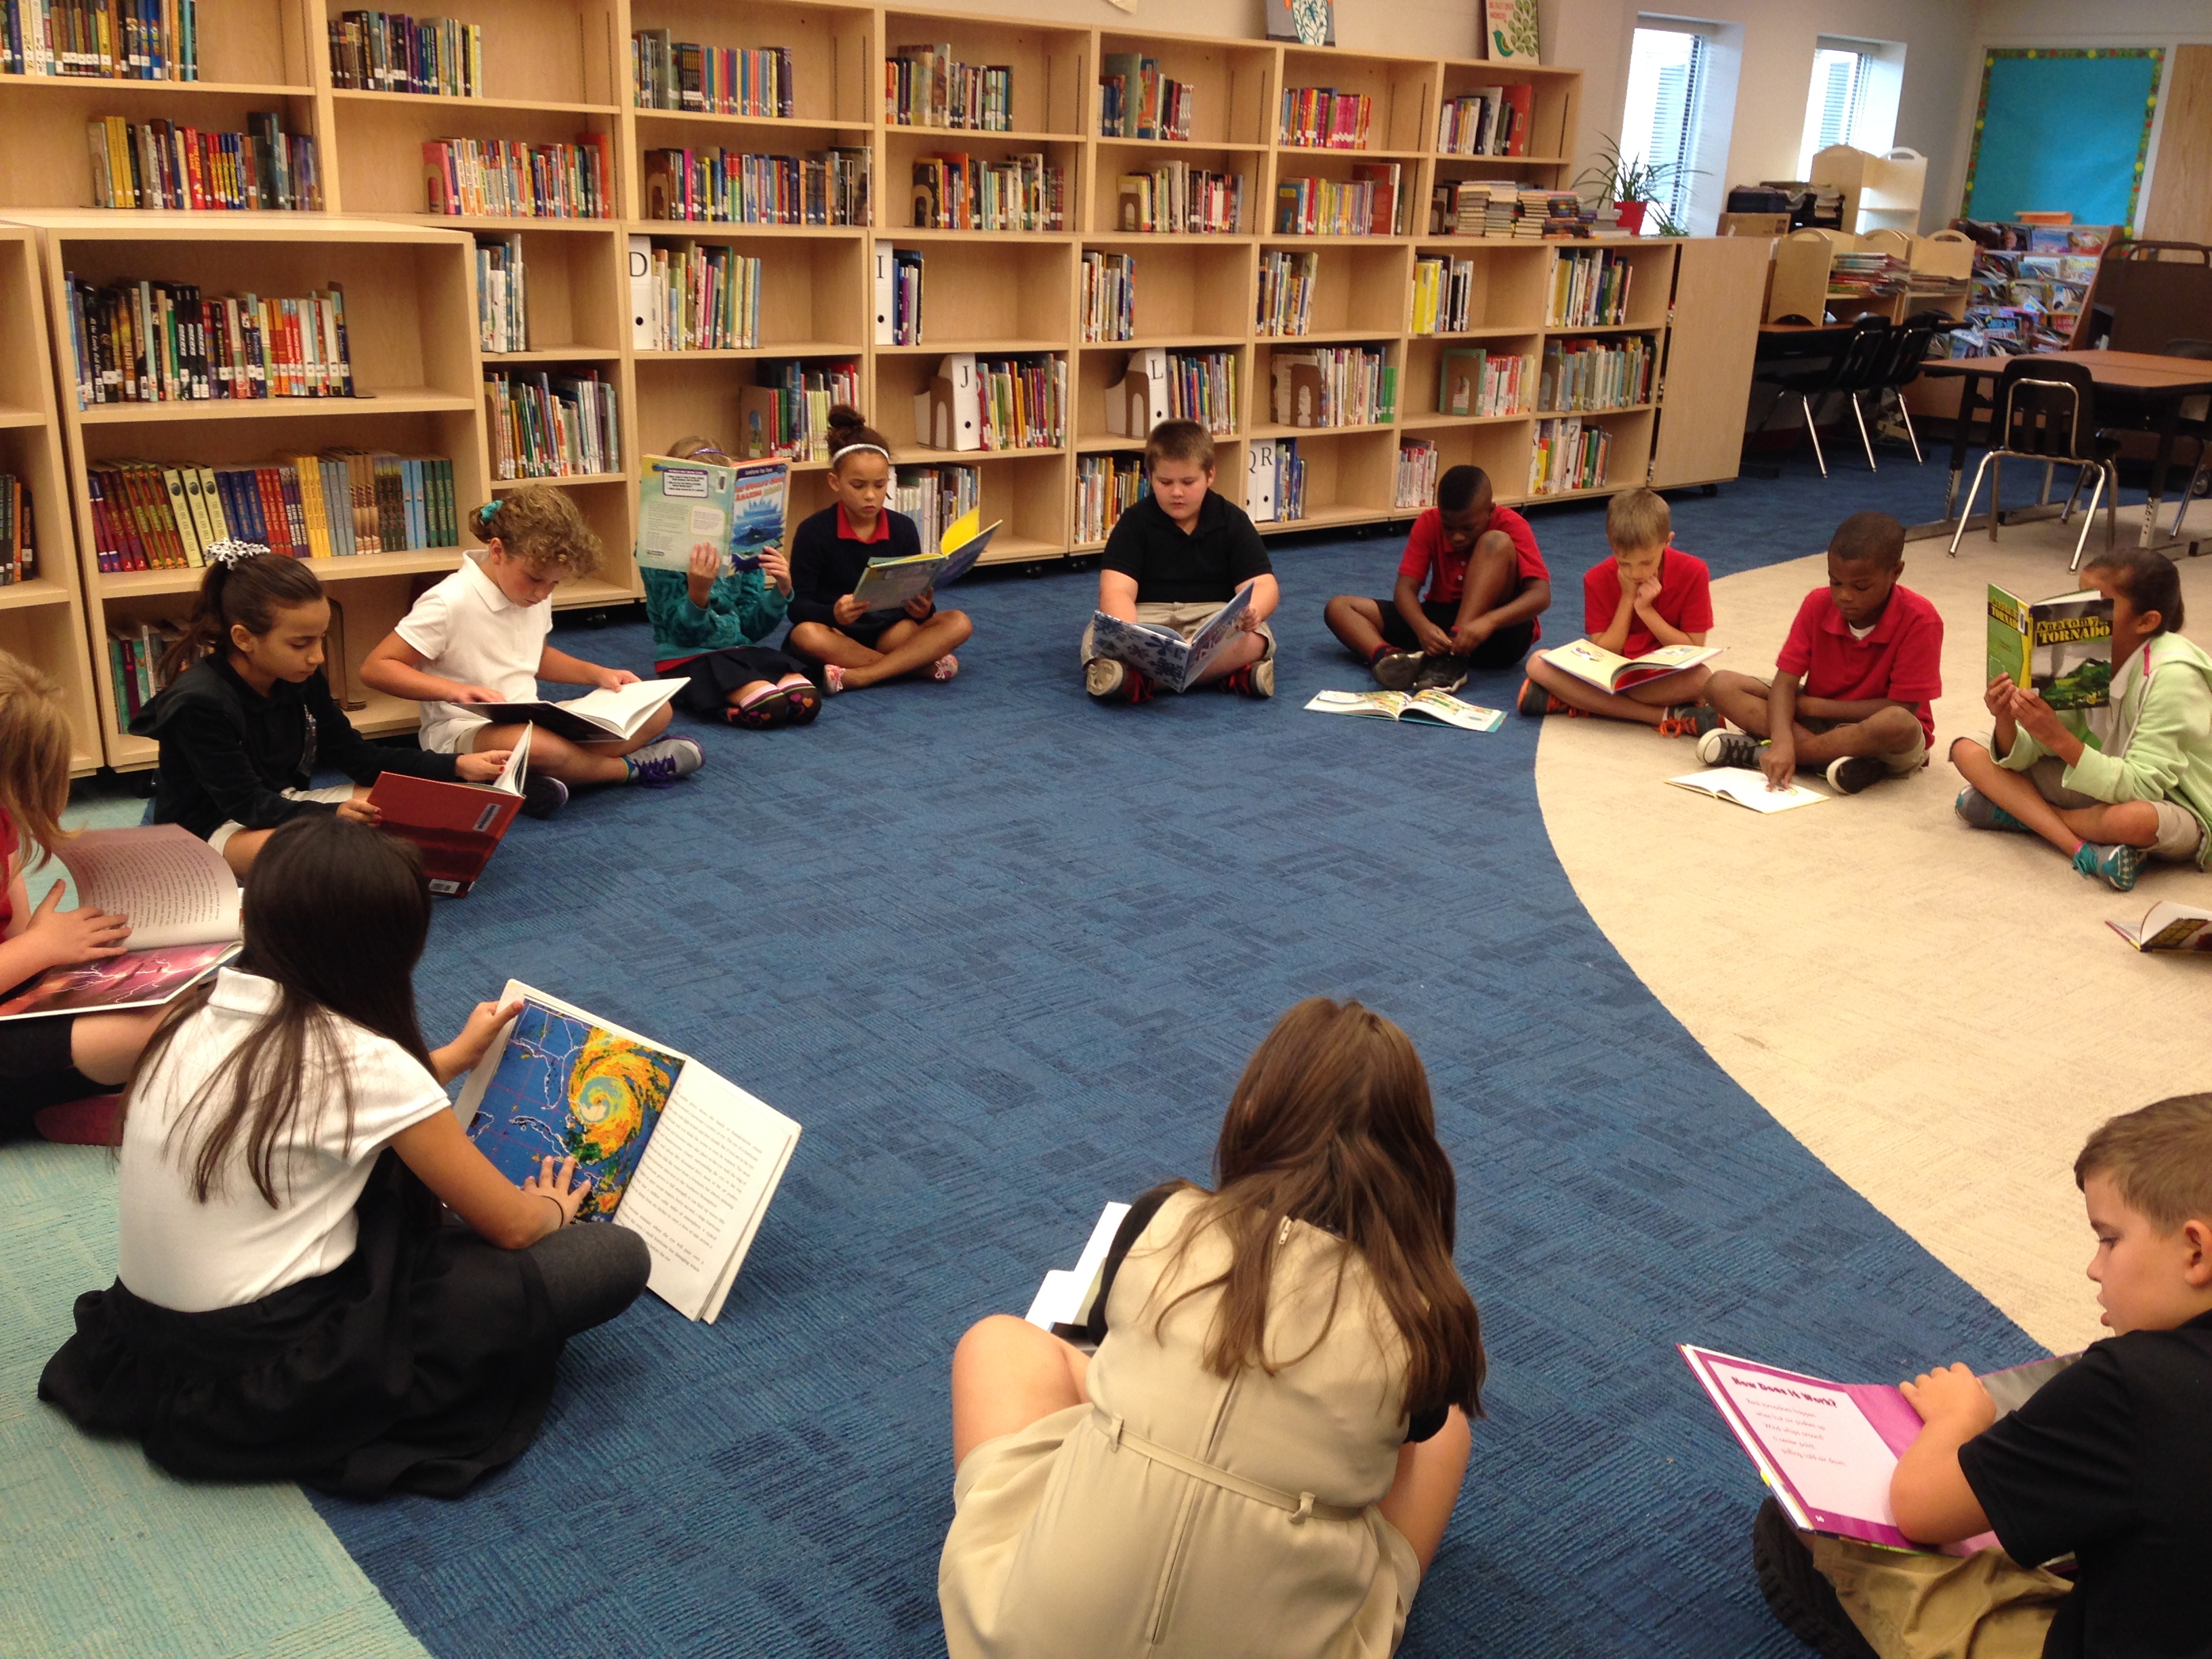 Library урок. Чтение книг. Библиотечное образование в США. Библиотечное образование в Франции. School students Library.